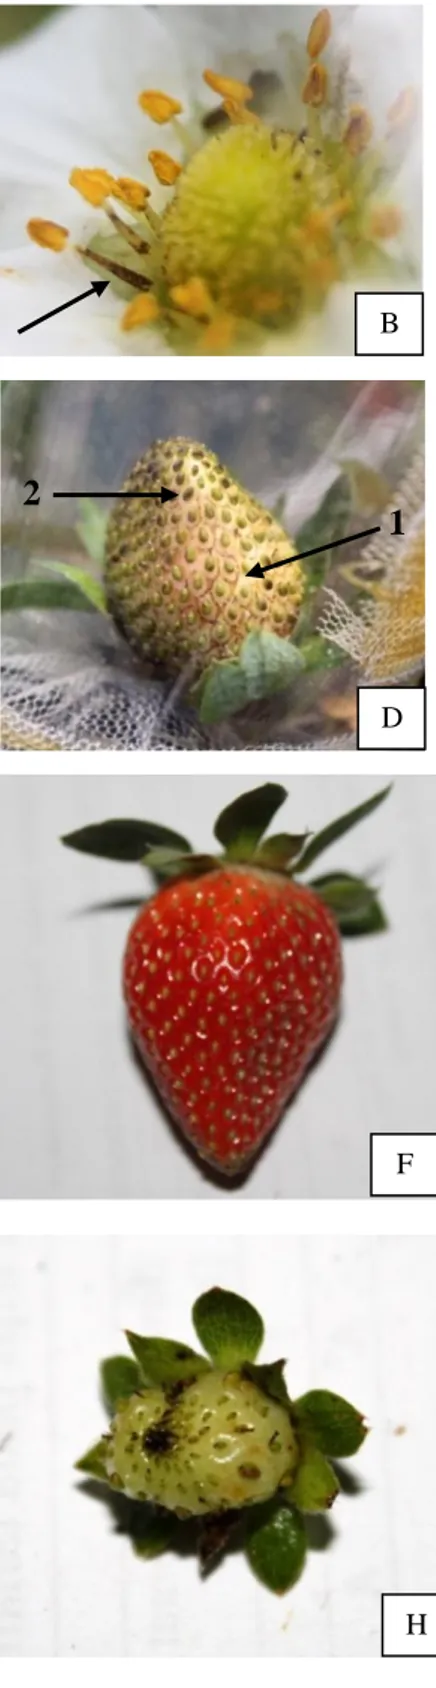 Gambar 10   Gejala serangan F. intonsa pada bunga dan buah stroberi: (A) bercak  cokelat  pada  mahkota  bunga  stroberi,  (B)  bercak  cokelat  pada  tangkai  sari,  (C)  bercak  cokelat  pada  pangkal  kelopak  bunga,  (D)  burik disekitar biji pada buah